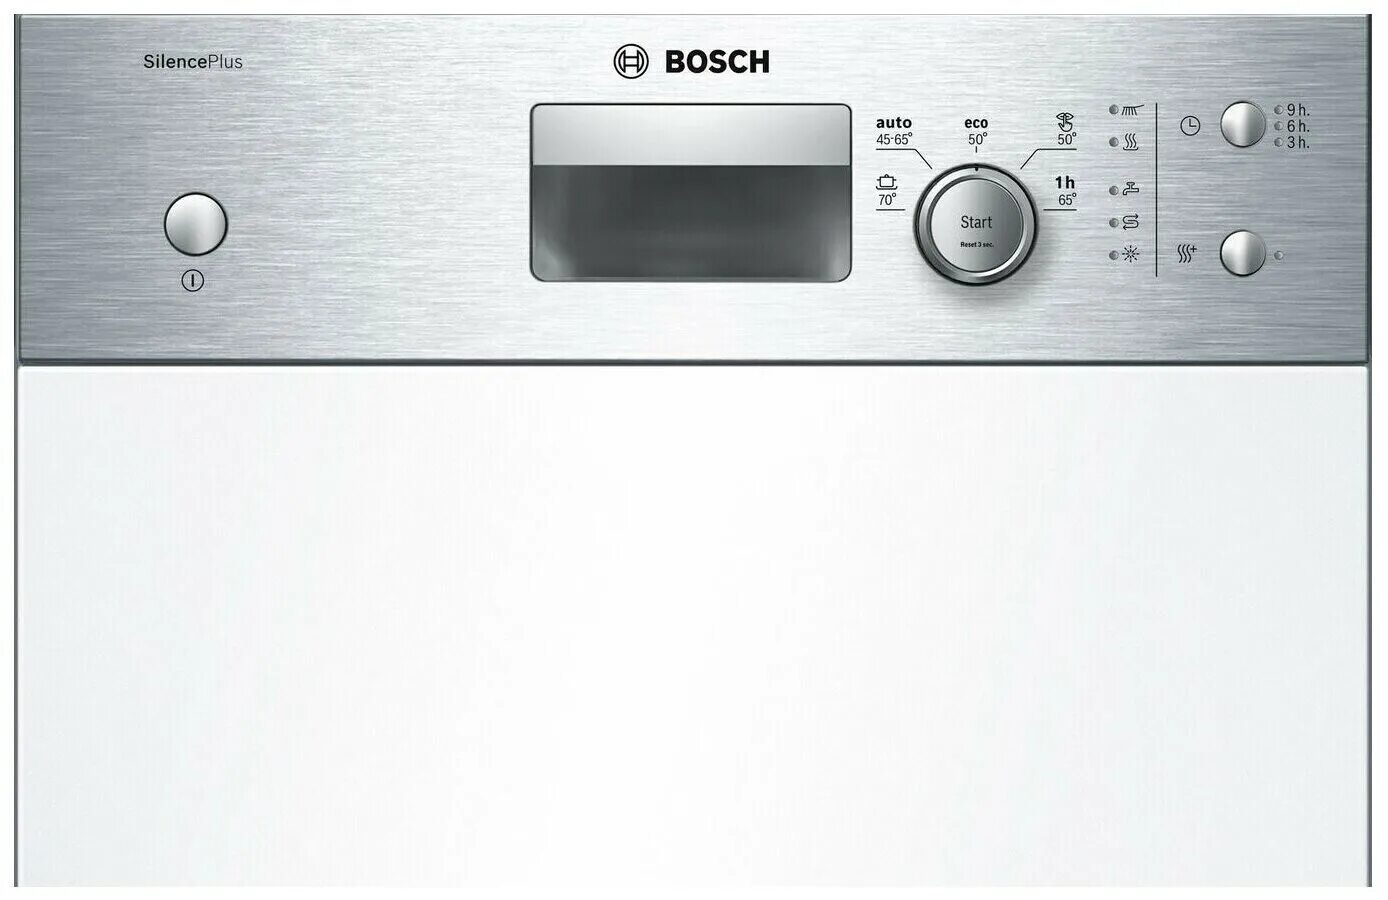 Посудомойка бош silence. Посудомоечная машина Bosch SPI 50e85. Посудомойка Bosch Silence Plus. Bosch Edition 45 Silence Plus. Посудомоечная машина Bosch SILENCEPLUS sps50x95.